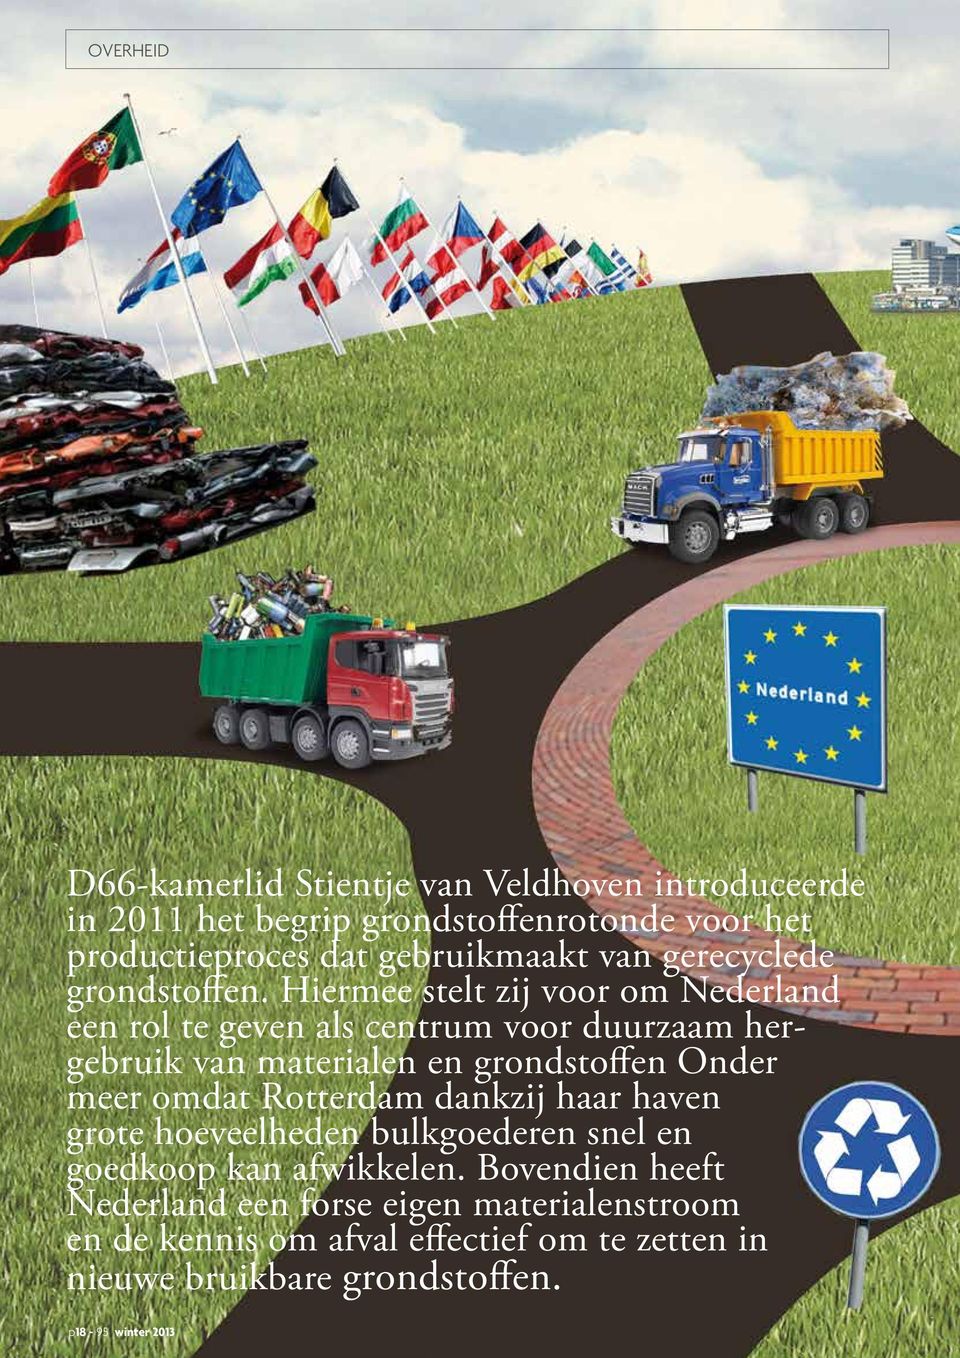 Hiermee stelt zij voor om Nederland een rol te geven als centrum voor duurzaam hergebruik van materialen en grondstoffen Onder meer omdat